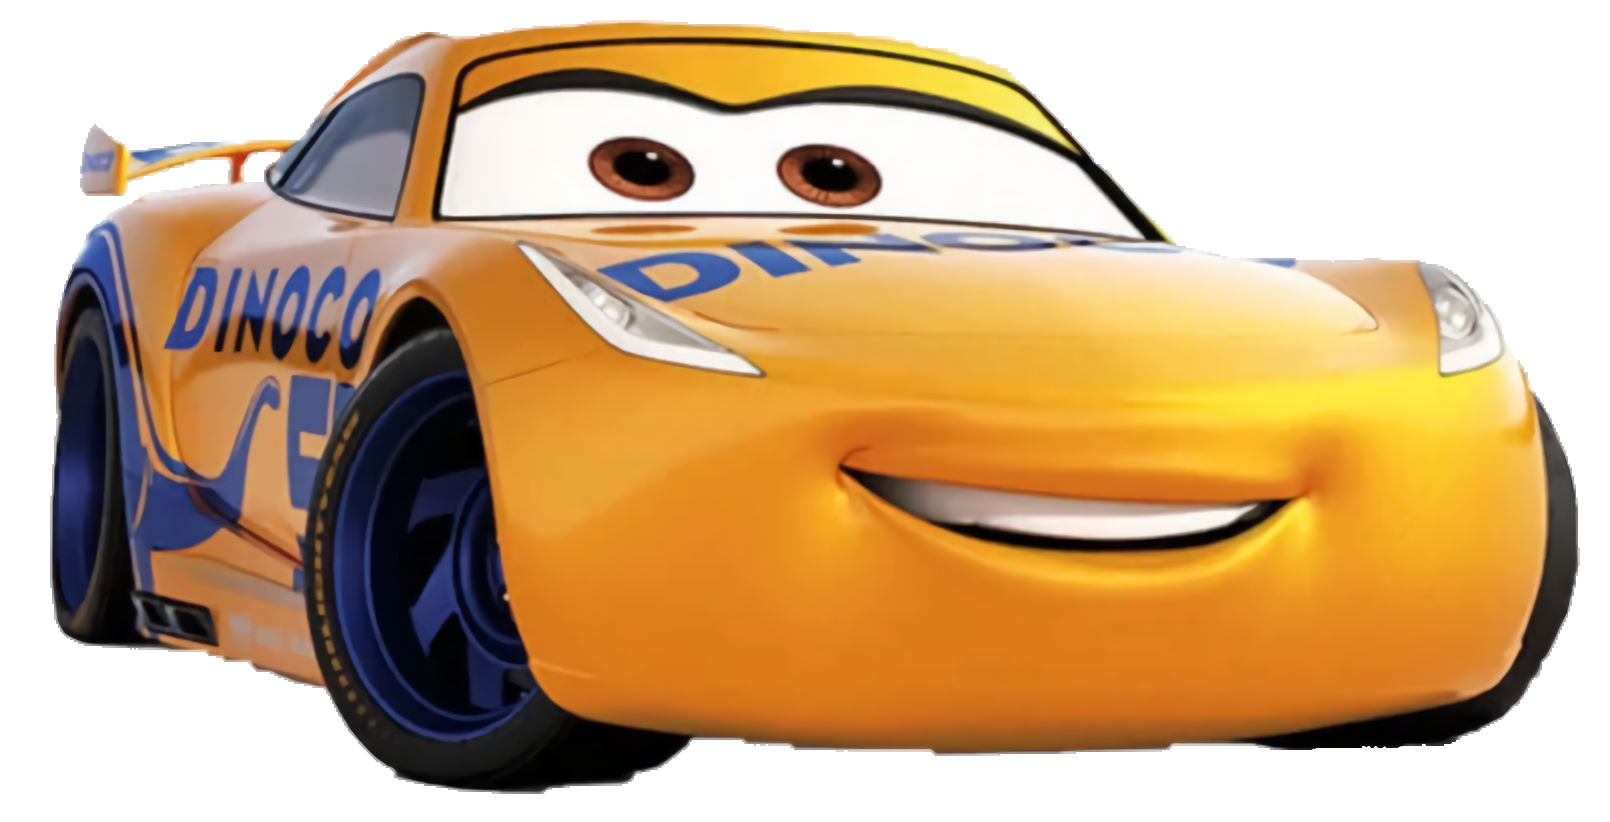 Disney Cars 3 Crash 'Ems - Cruz Ramirez 